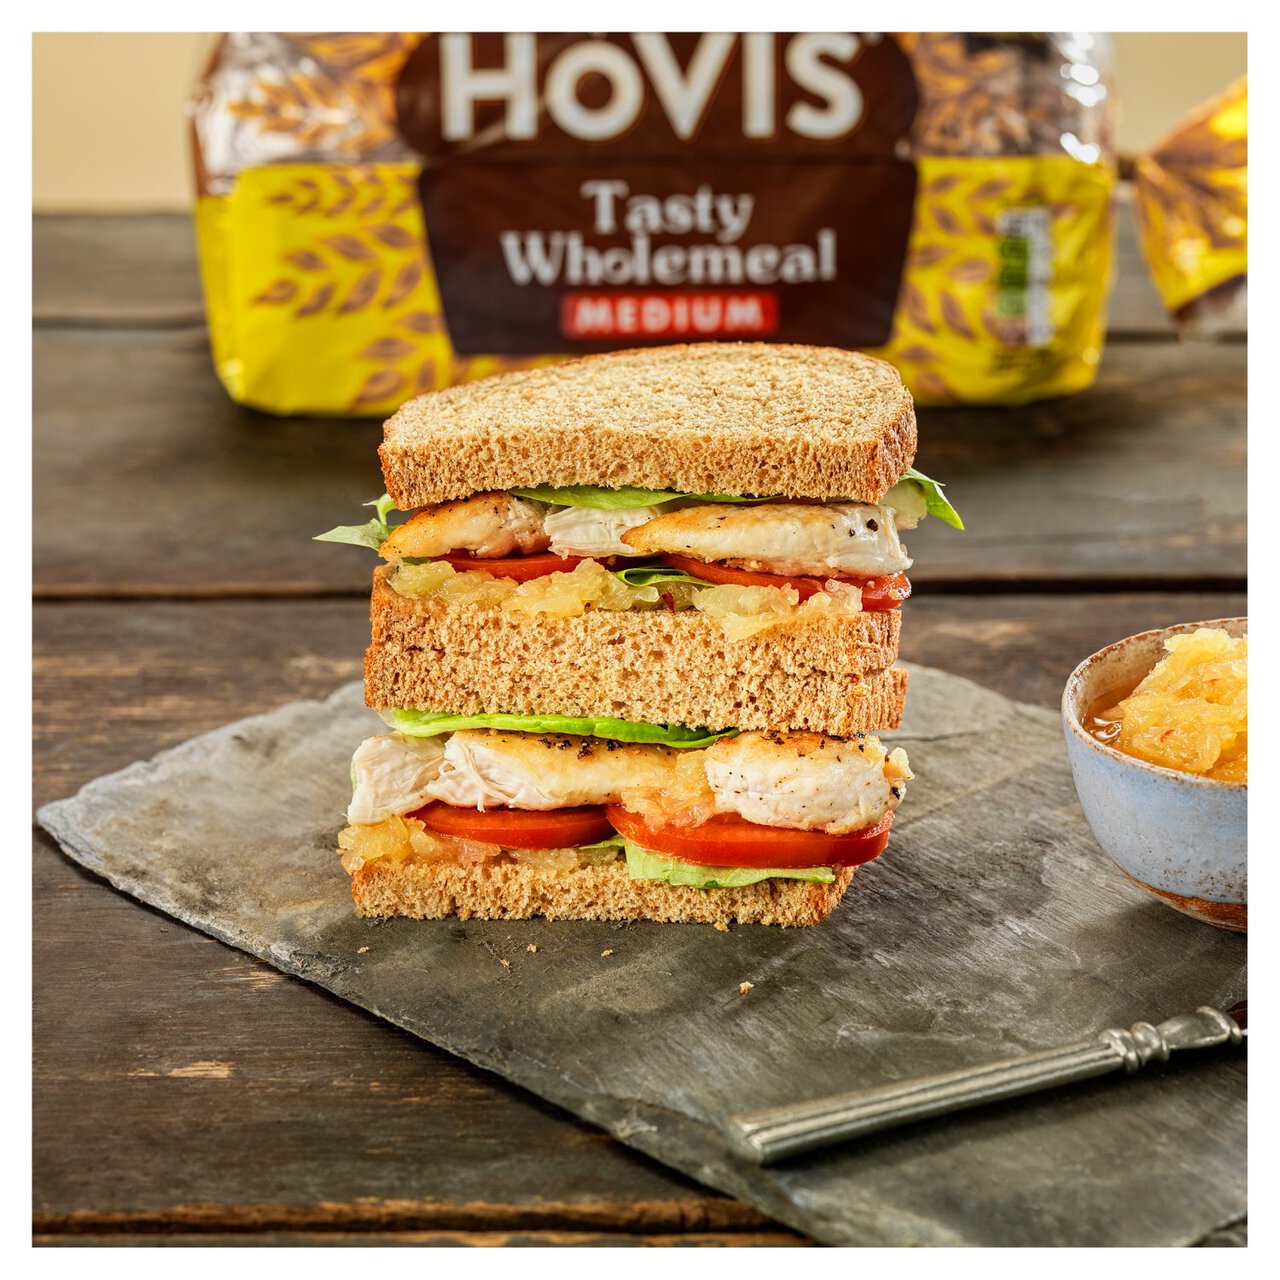 Hovis Tasty Wholemeal Medium Sliced Bread 800g